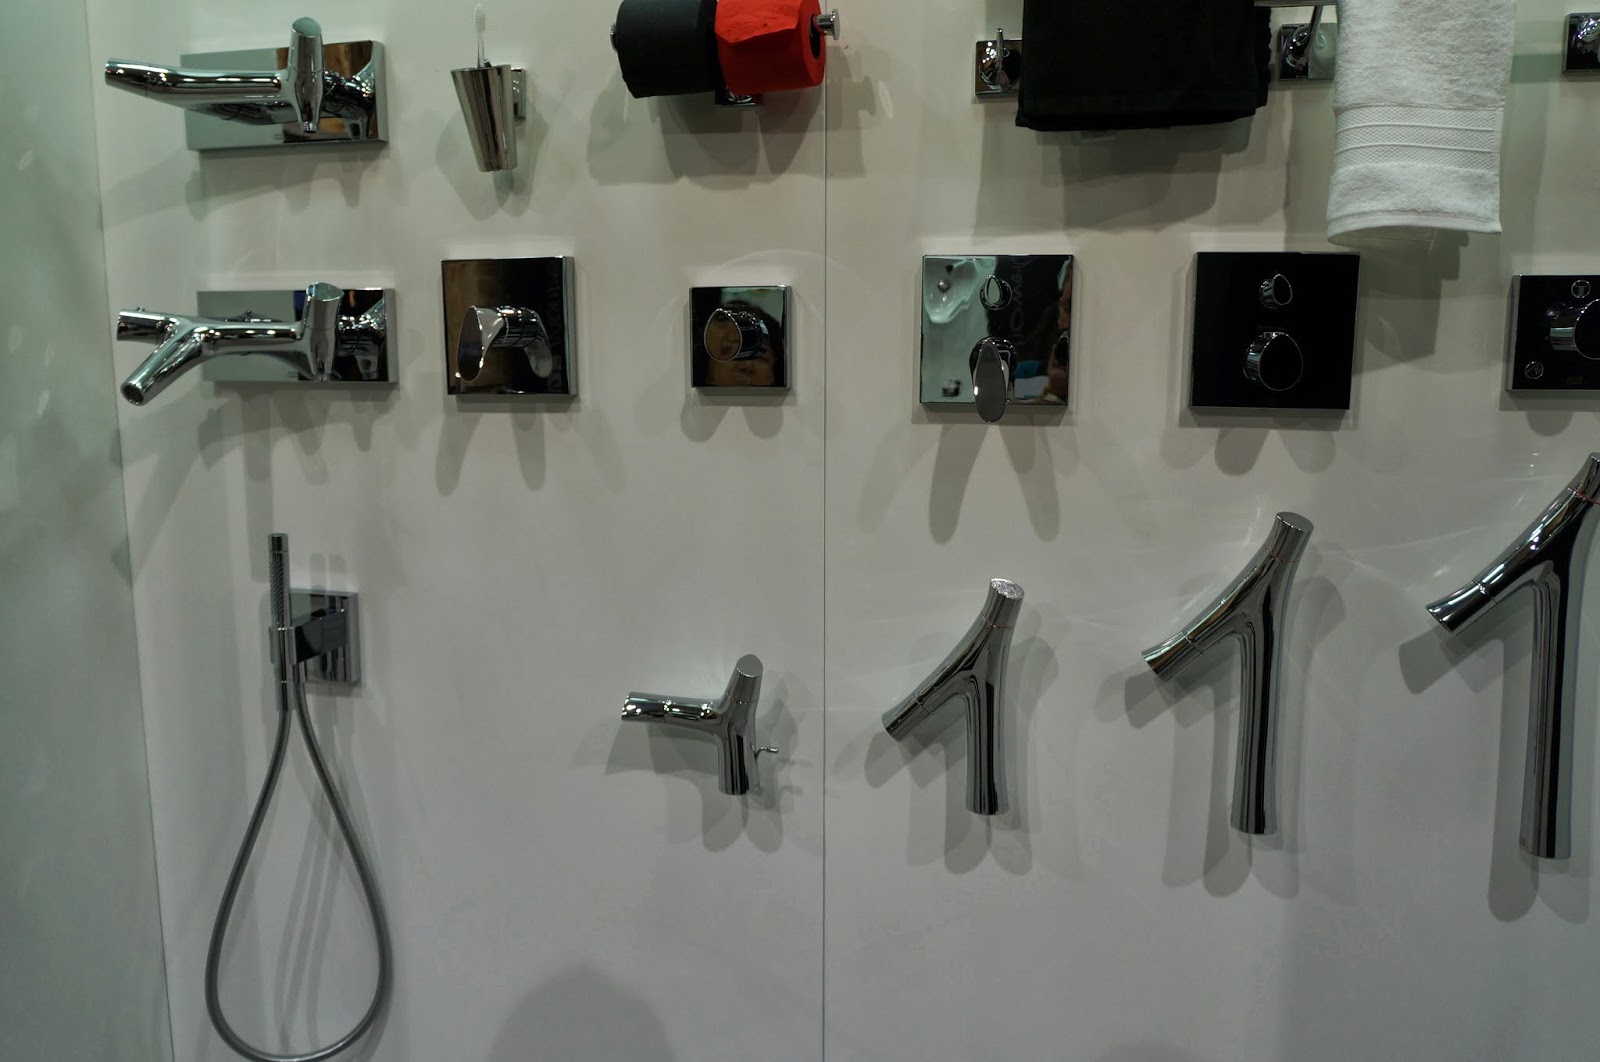 diversas peças de chuveiro, duchas e outros da Hansgrohe - Expo Revestir 2014